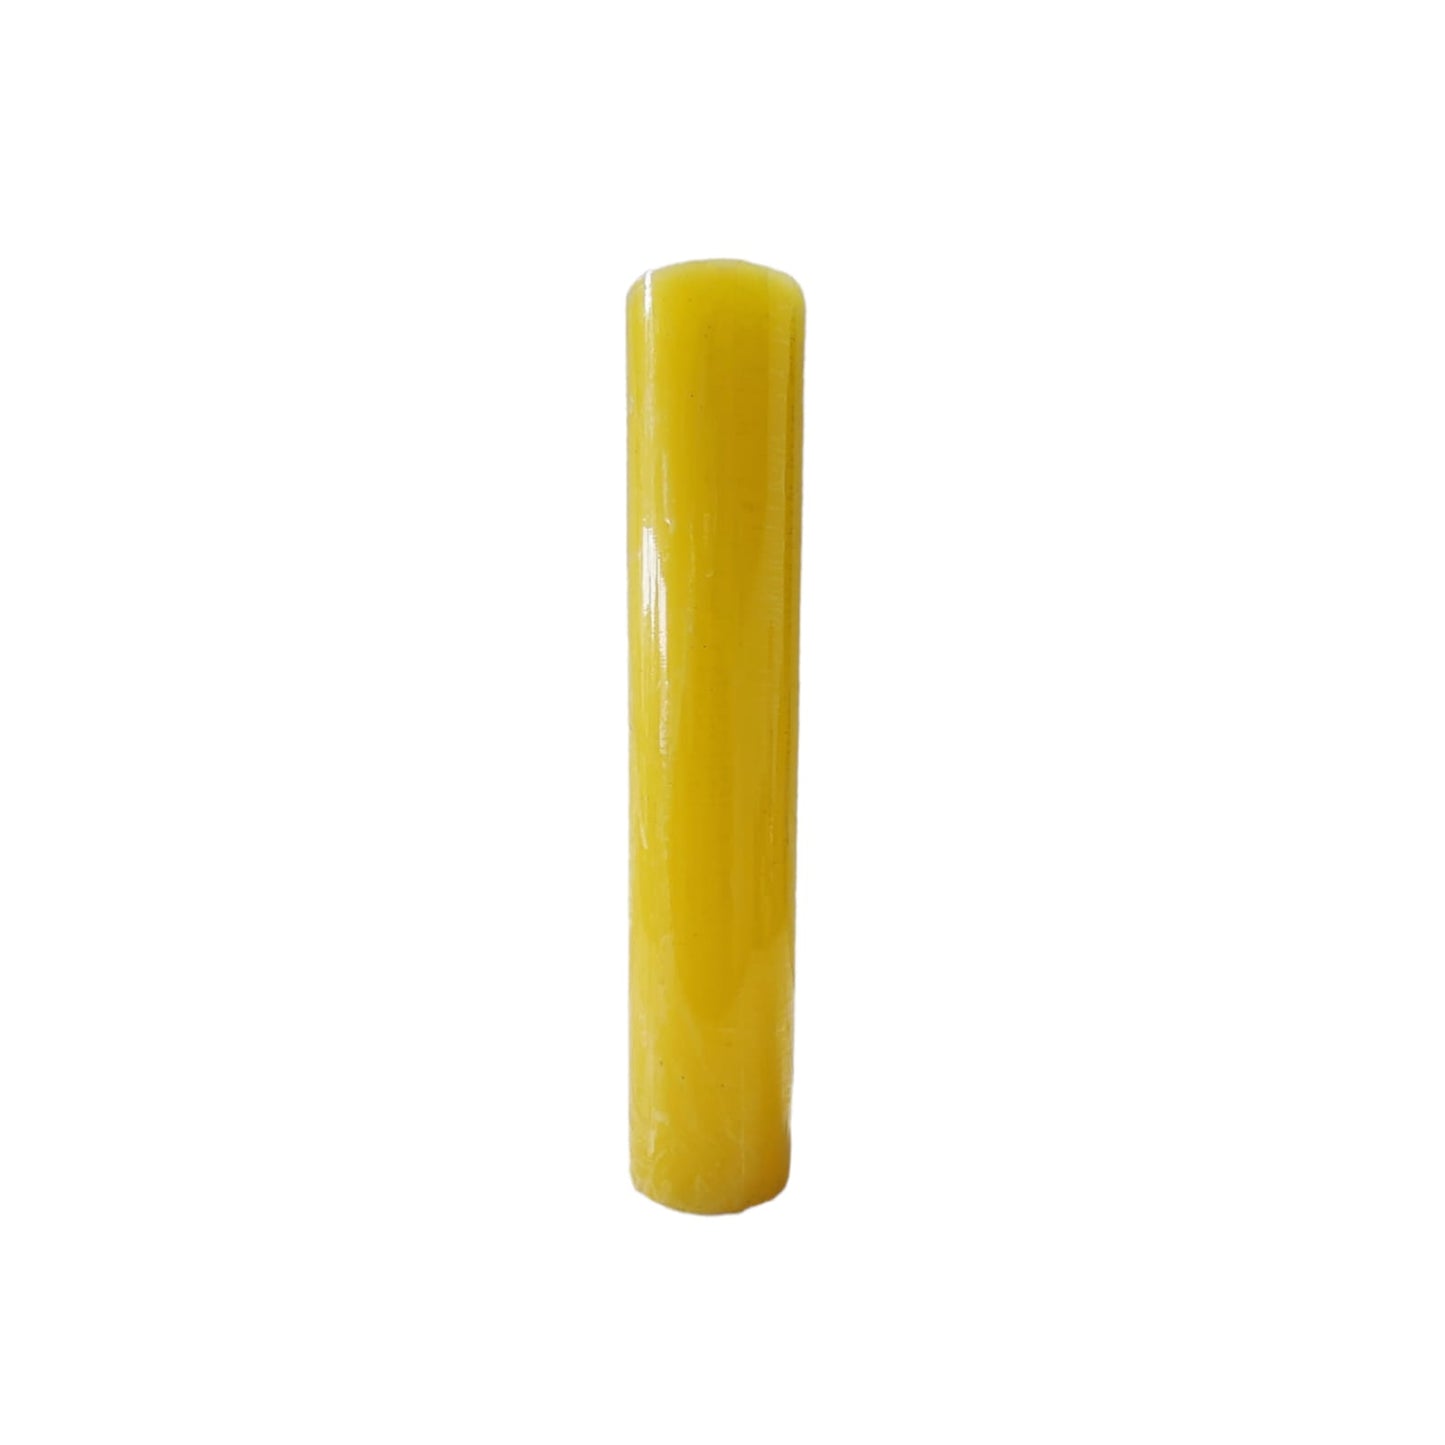 15cm Cirio/Velon Amarillo